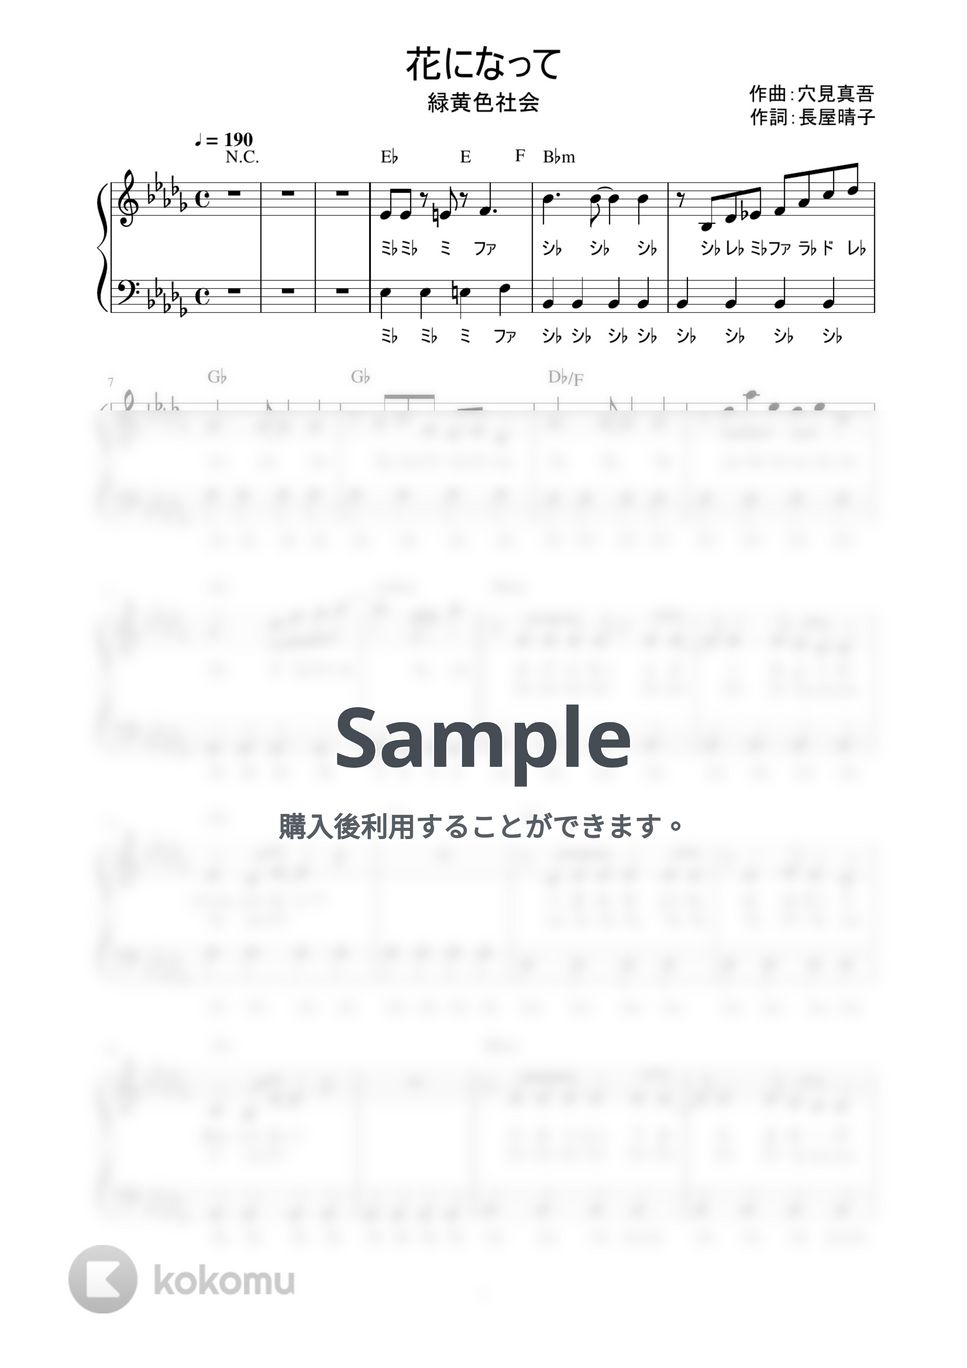 緑黄色社会 - 花になって (かんたん / 歌詞付き / ドレミ付き / 初心者) by piano.tokyo